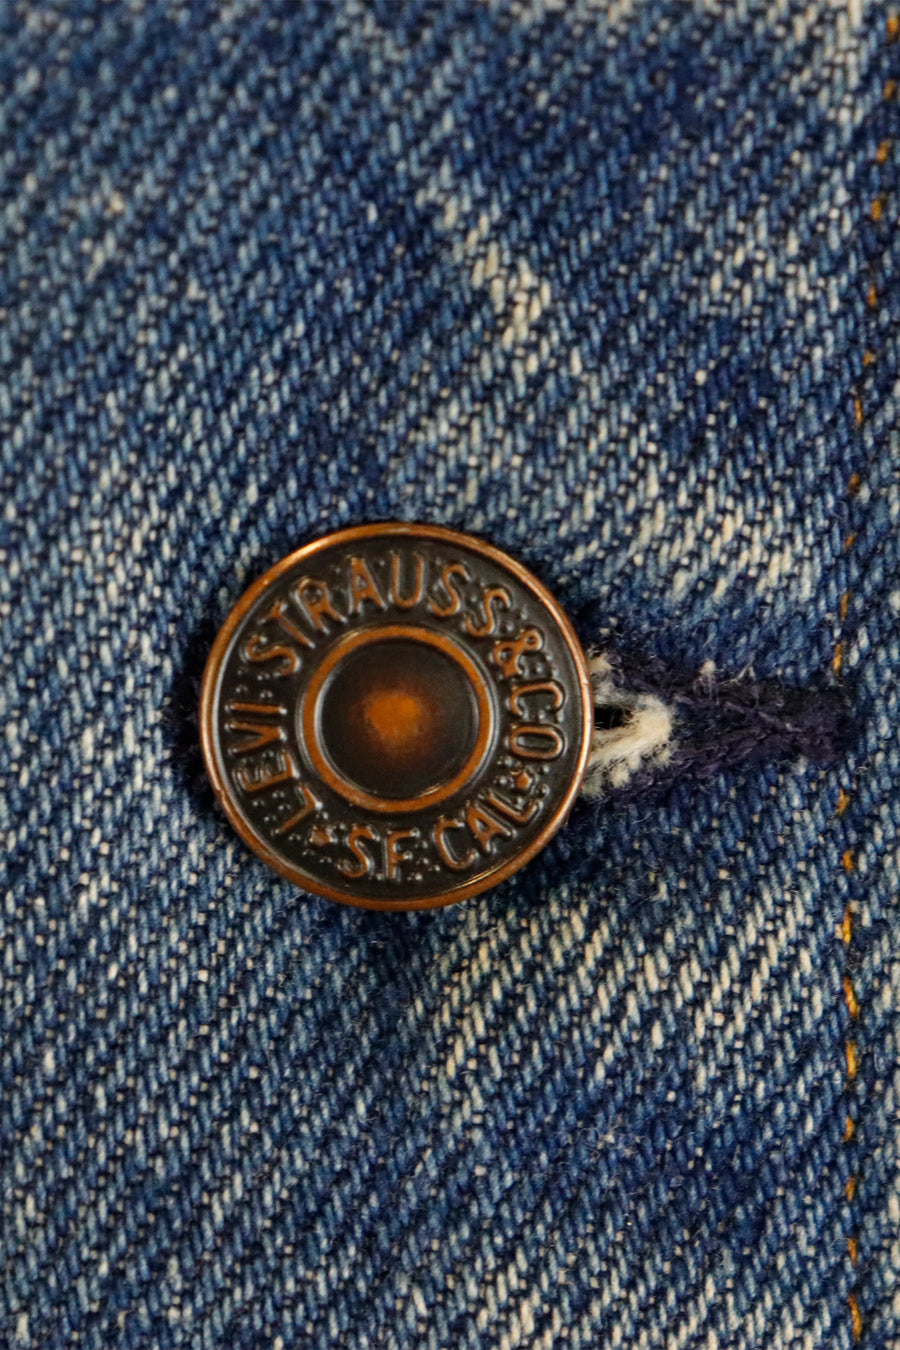 Vintage Levi Brand Denim Jean Long Sleeve Jacket Sz S